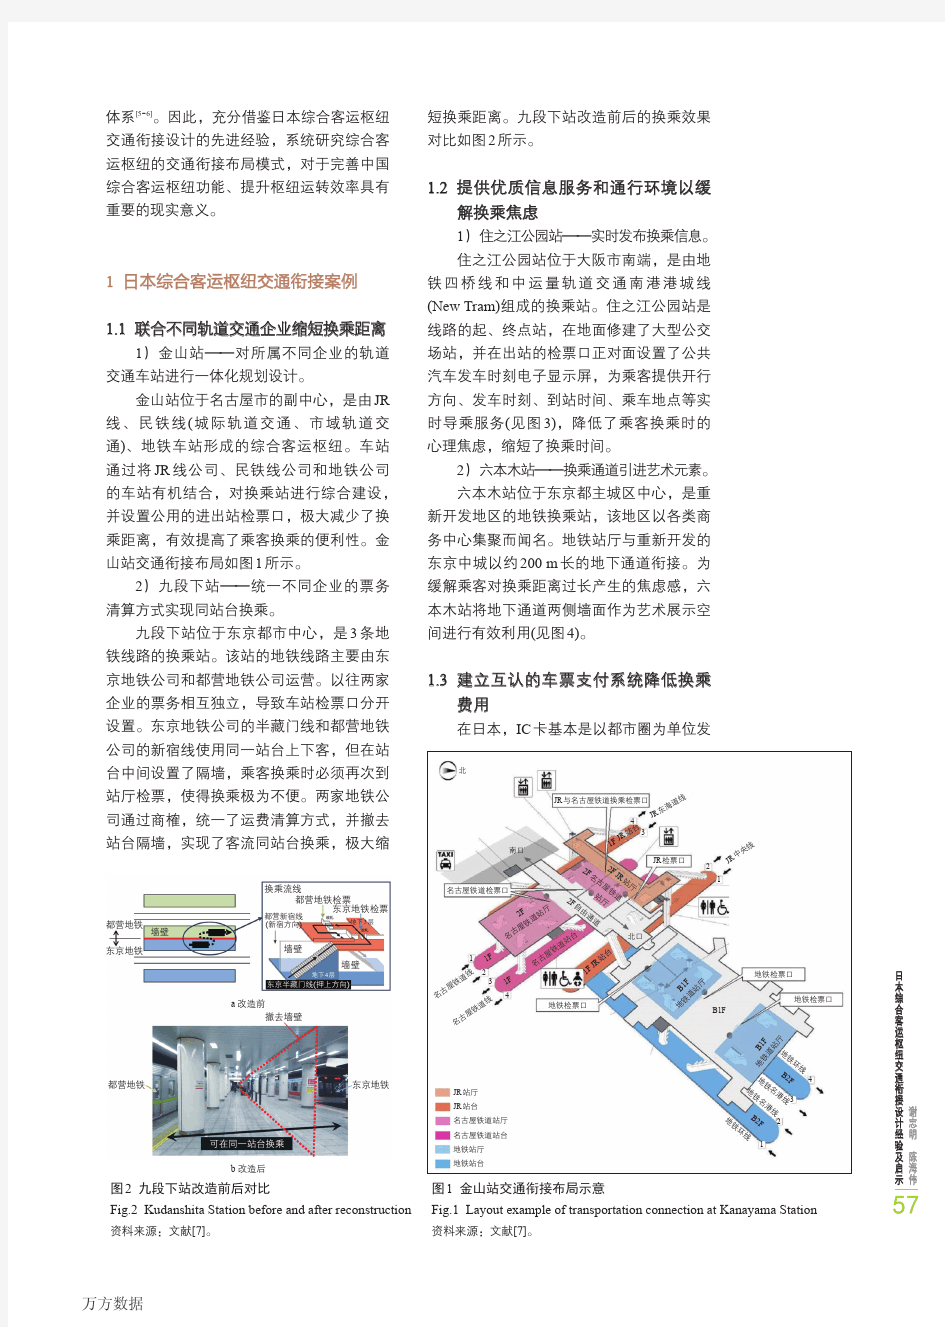 日本综合客运枢纽交通衔接设计经验及启示